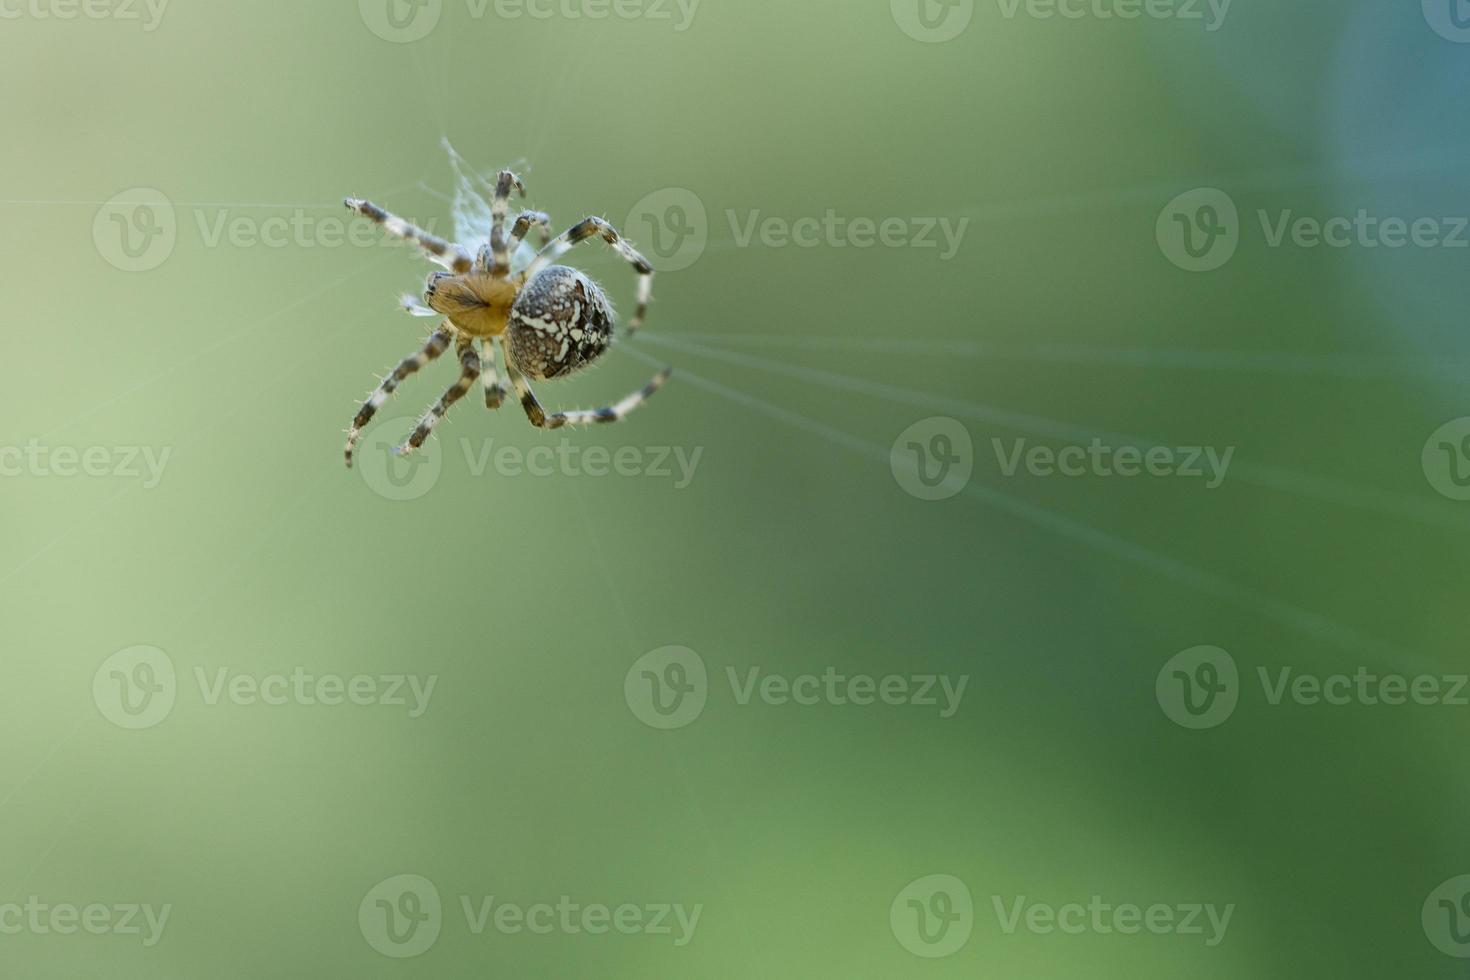 kruis spin in een spin web, op de loer voor prooi. wazig achtergrond foto